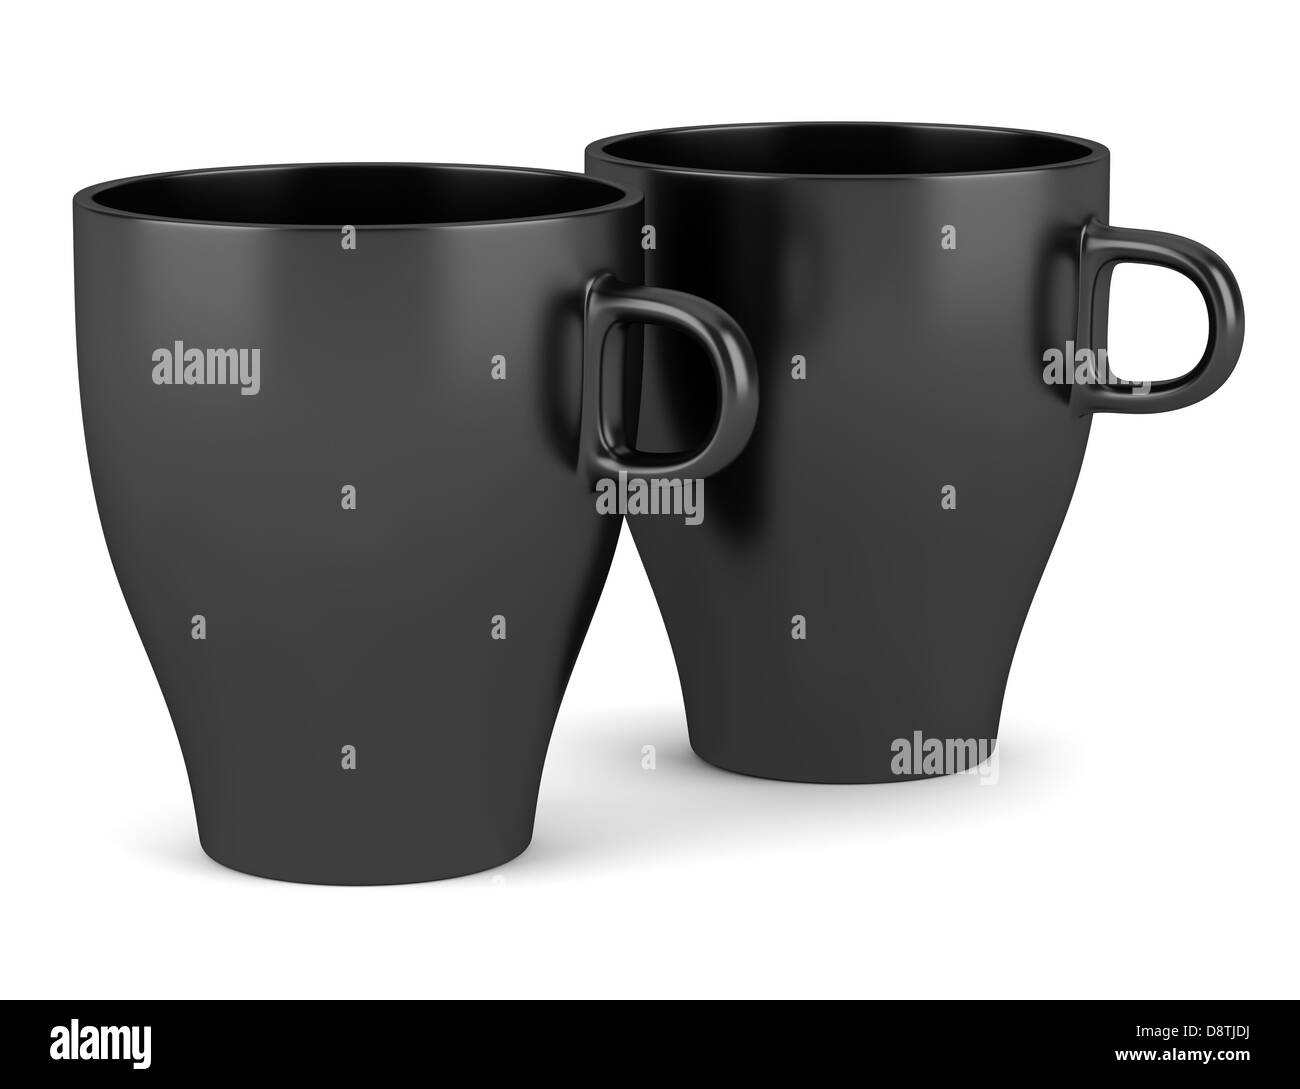 Deux tasses en céramique noire isolated on white Banque D'Images